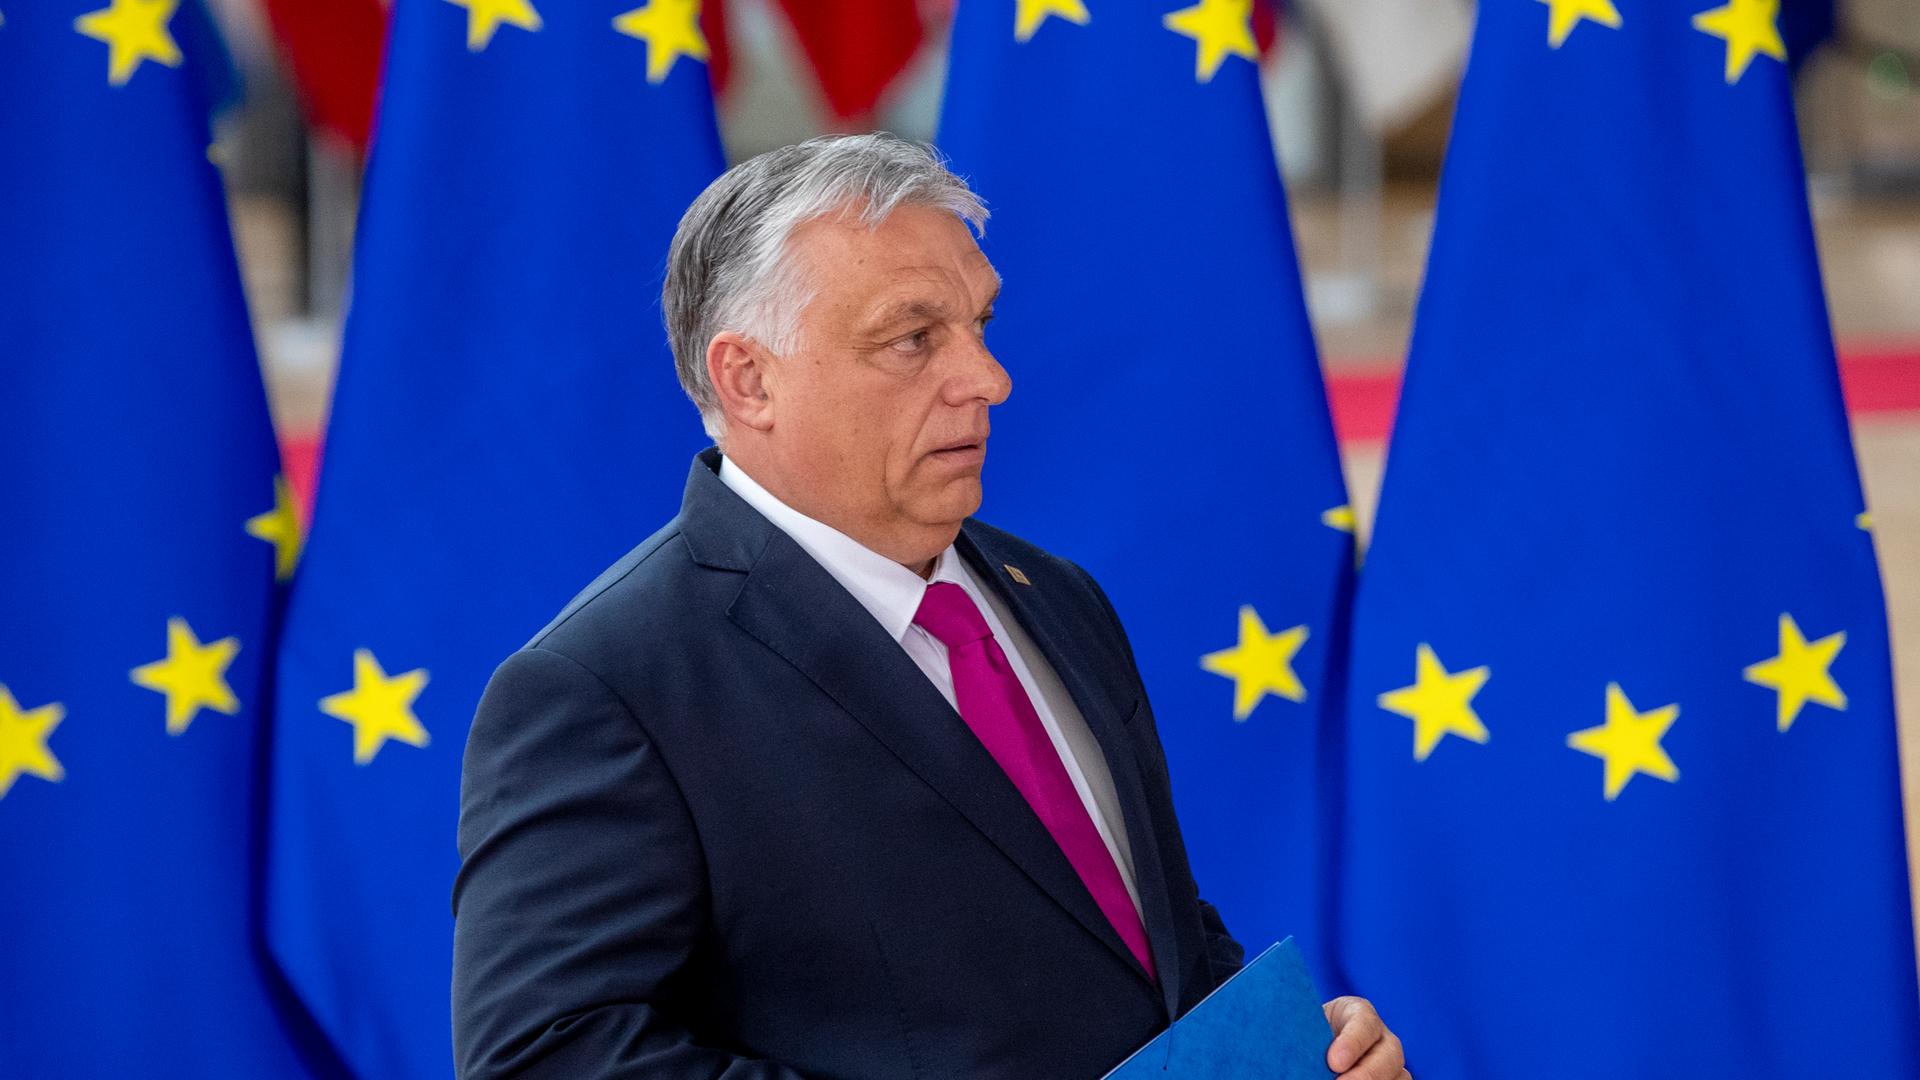 Ungarns Premierminister Viktor Orbán, so der Vorwurf der EU, habe Rechtsstaatlichkeit abgebaut.